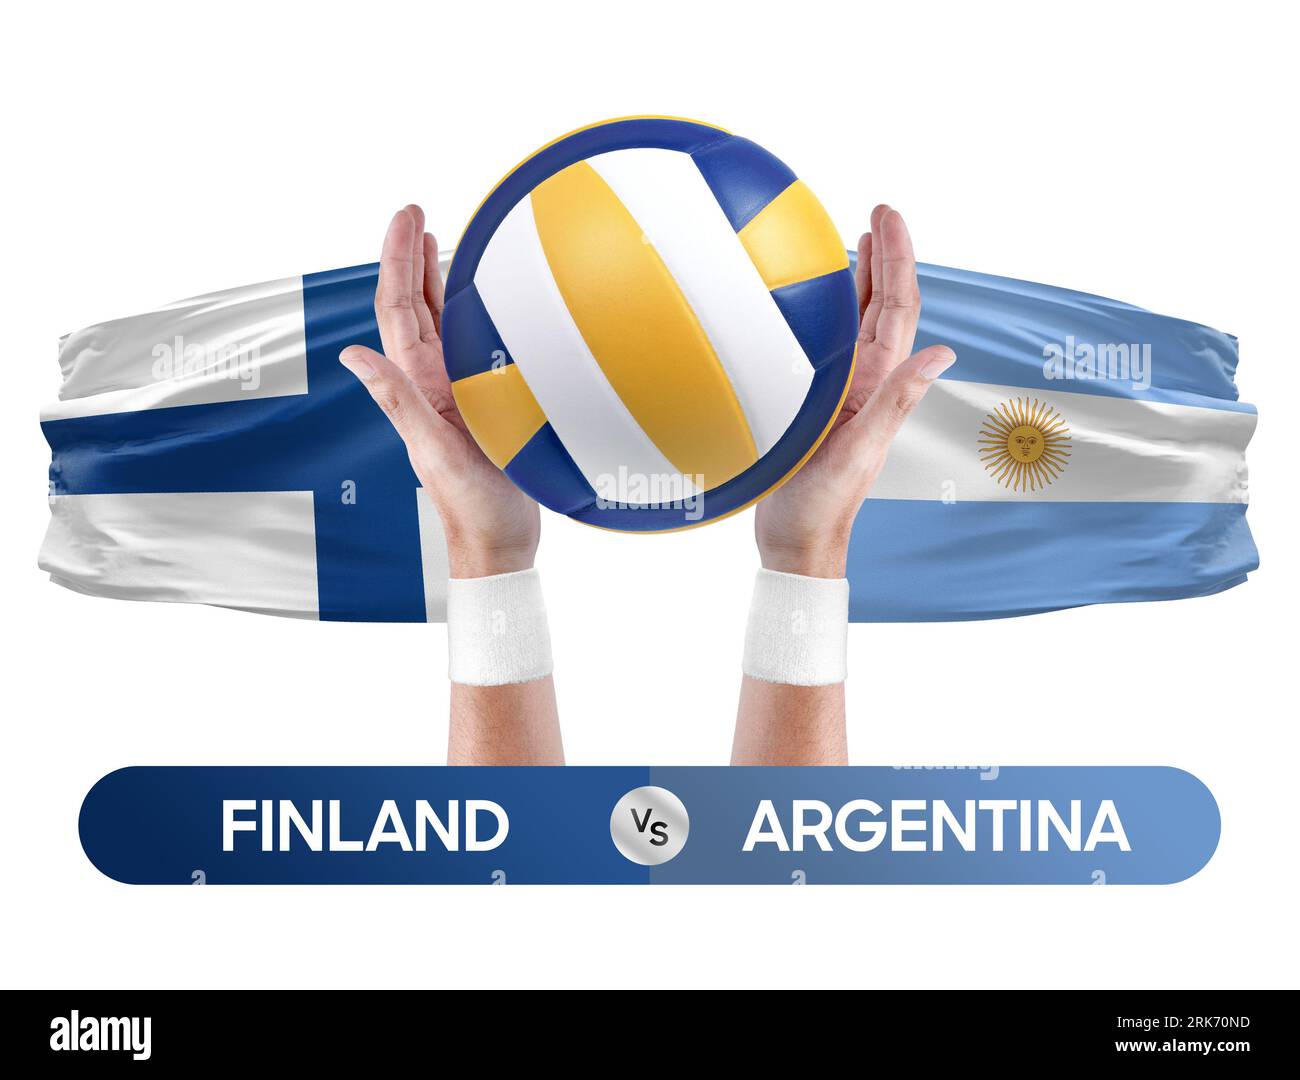 Finnland gegen Argentinien Nationalmannschaften Volleyball Volleyball Volleyball Match Competition Concept. Stockfoto